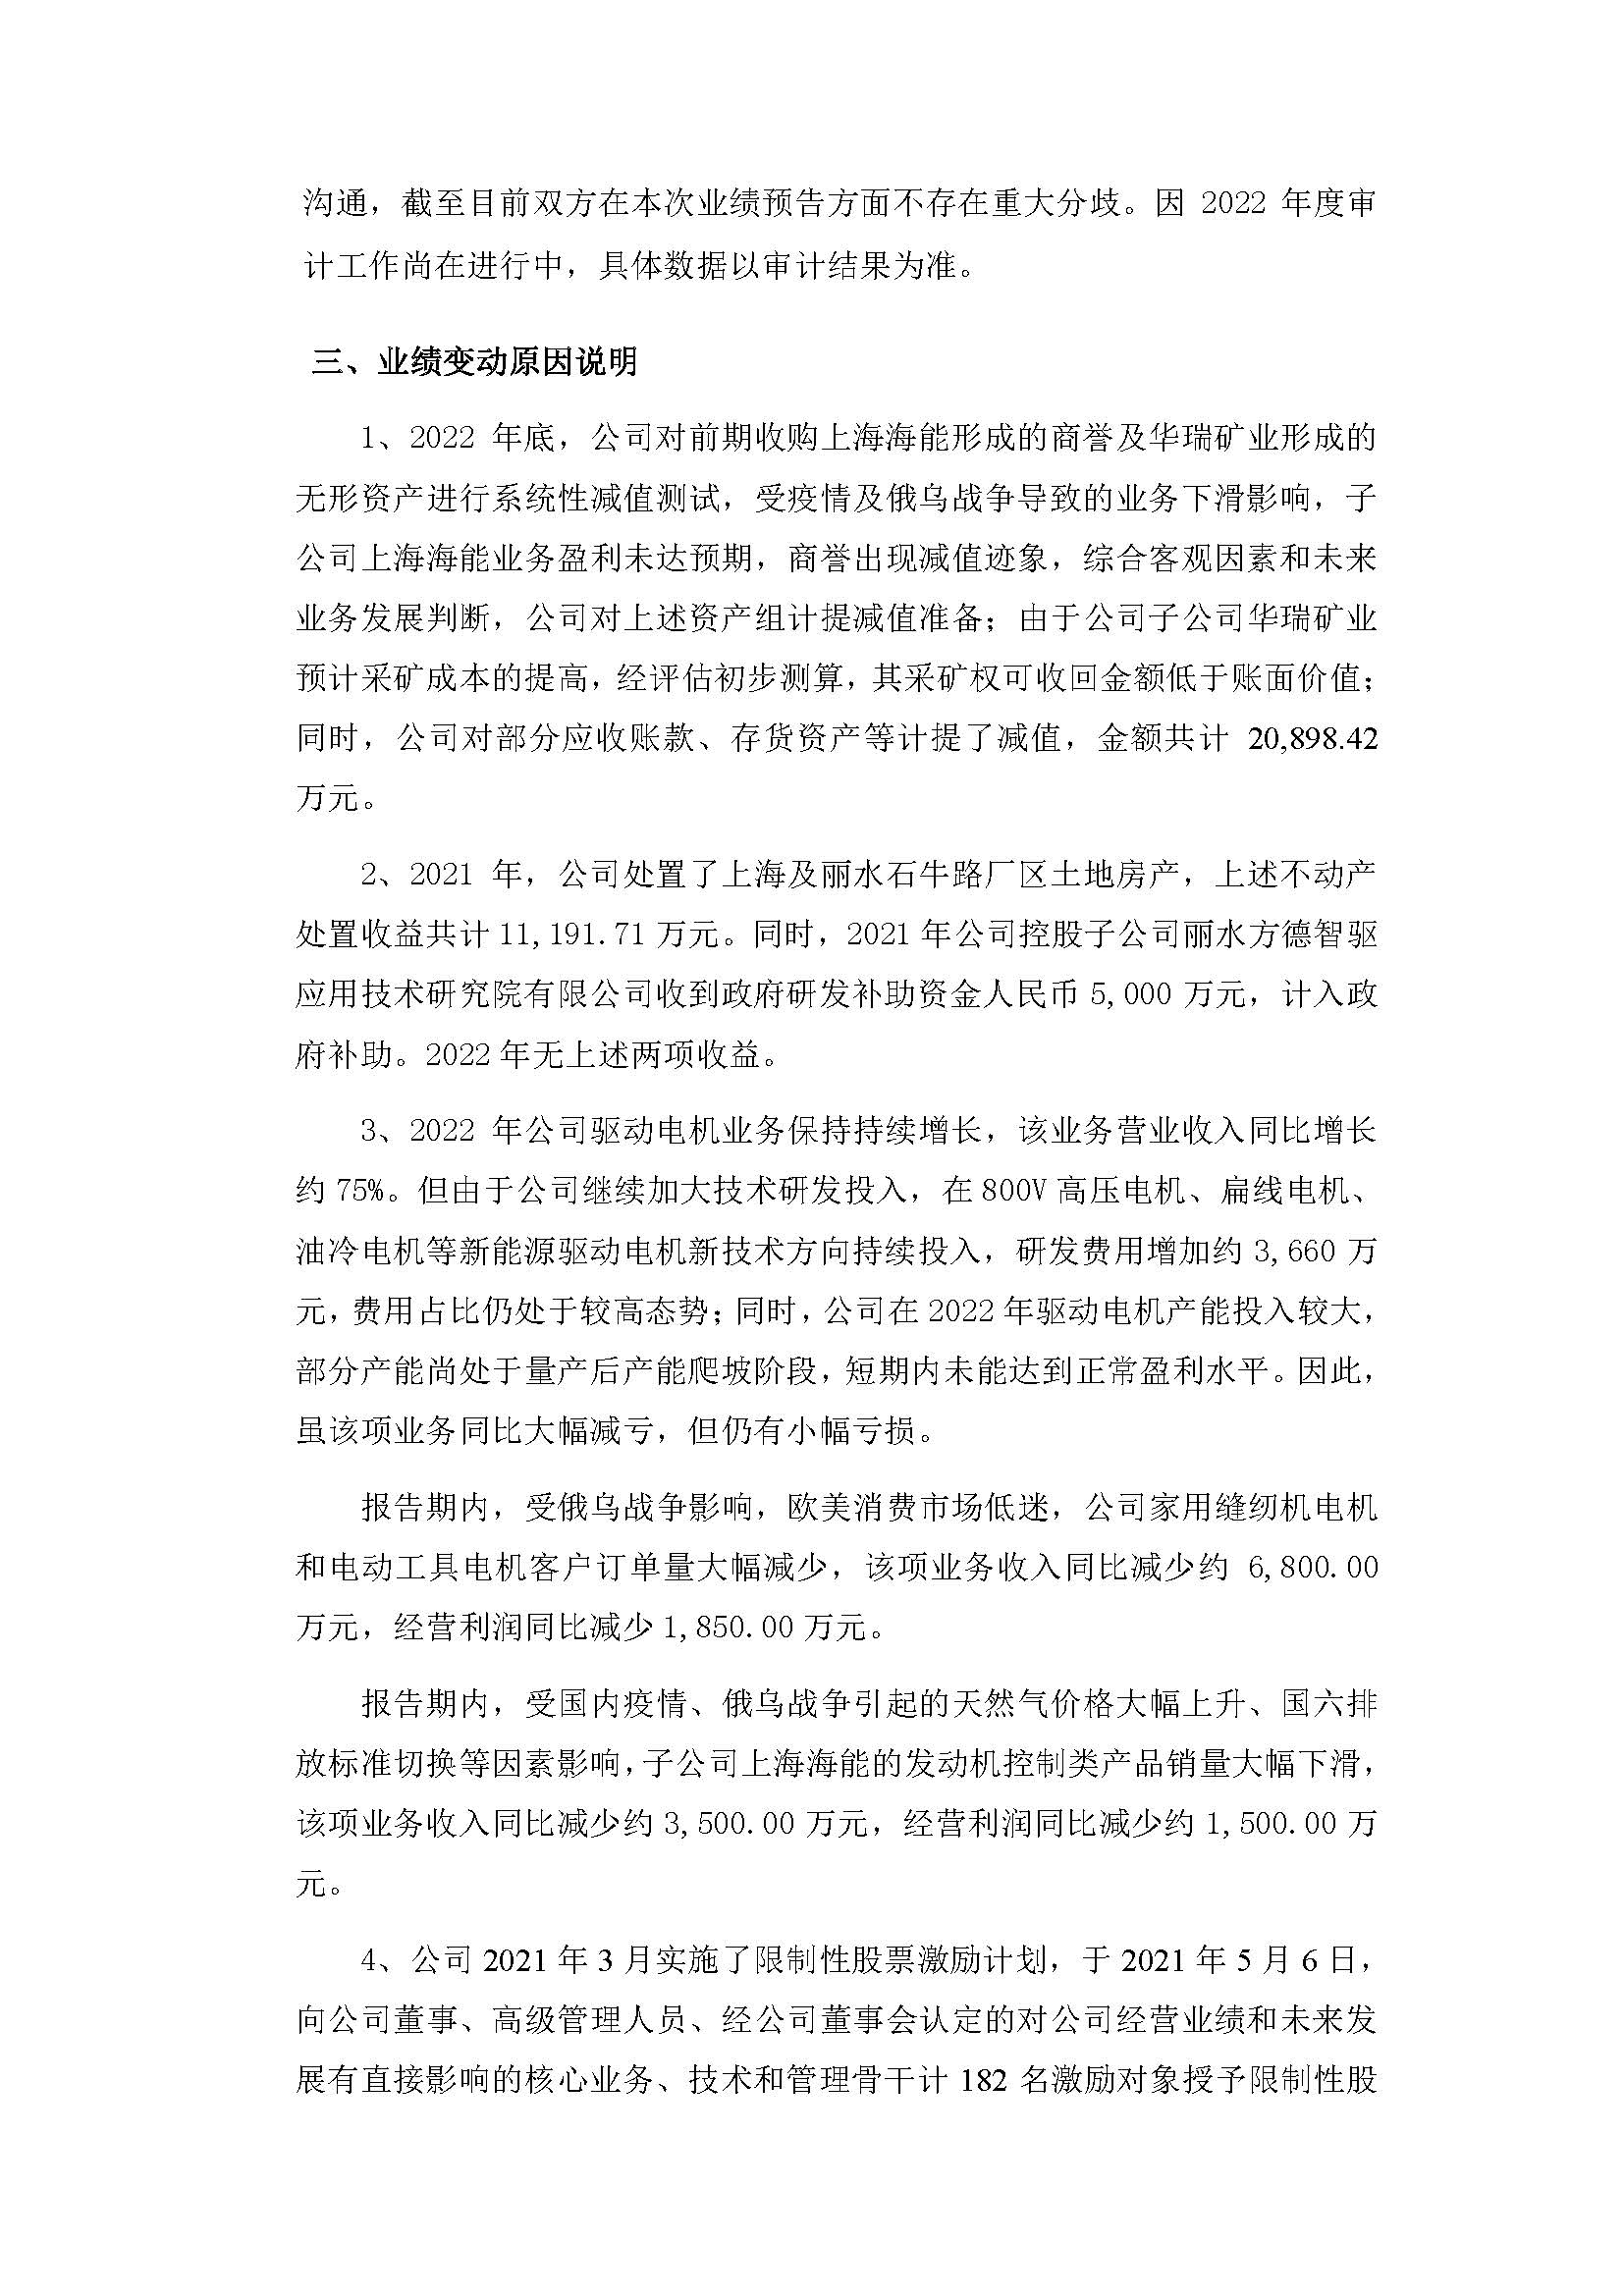 浙江方正電機股份有限公司2022 年度業績預告_頁面_2